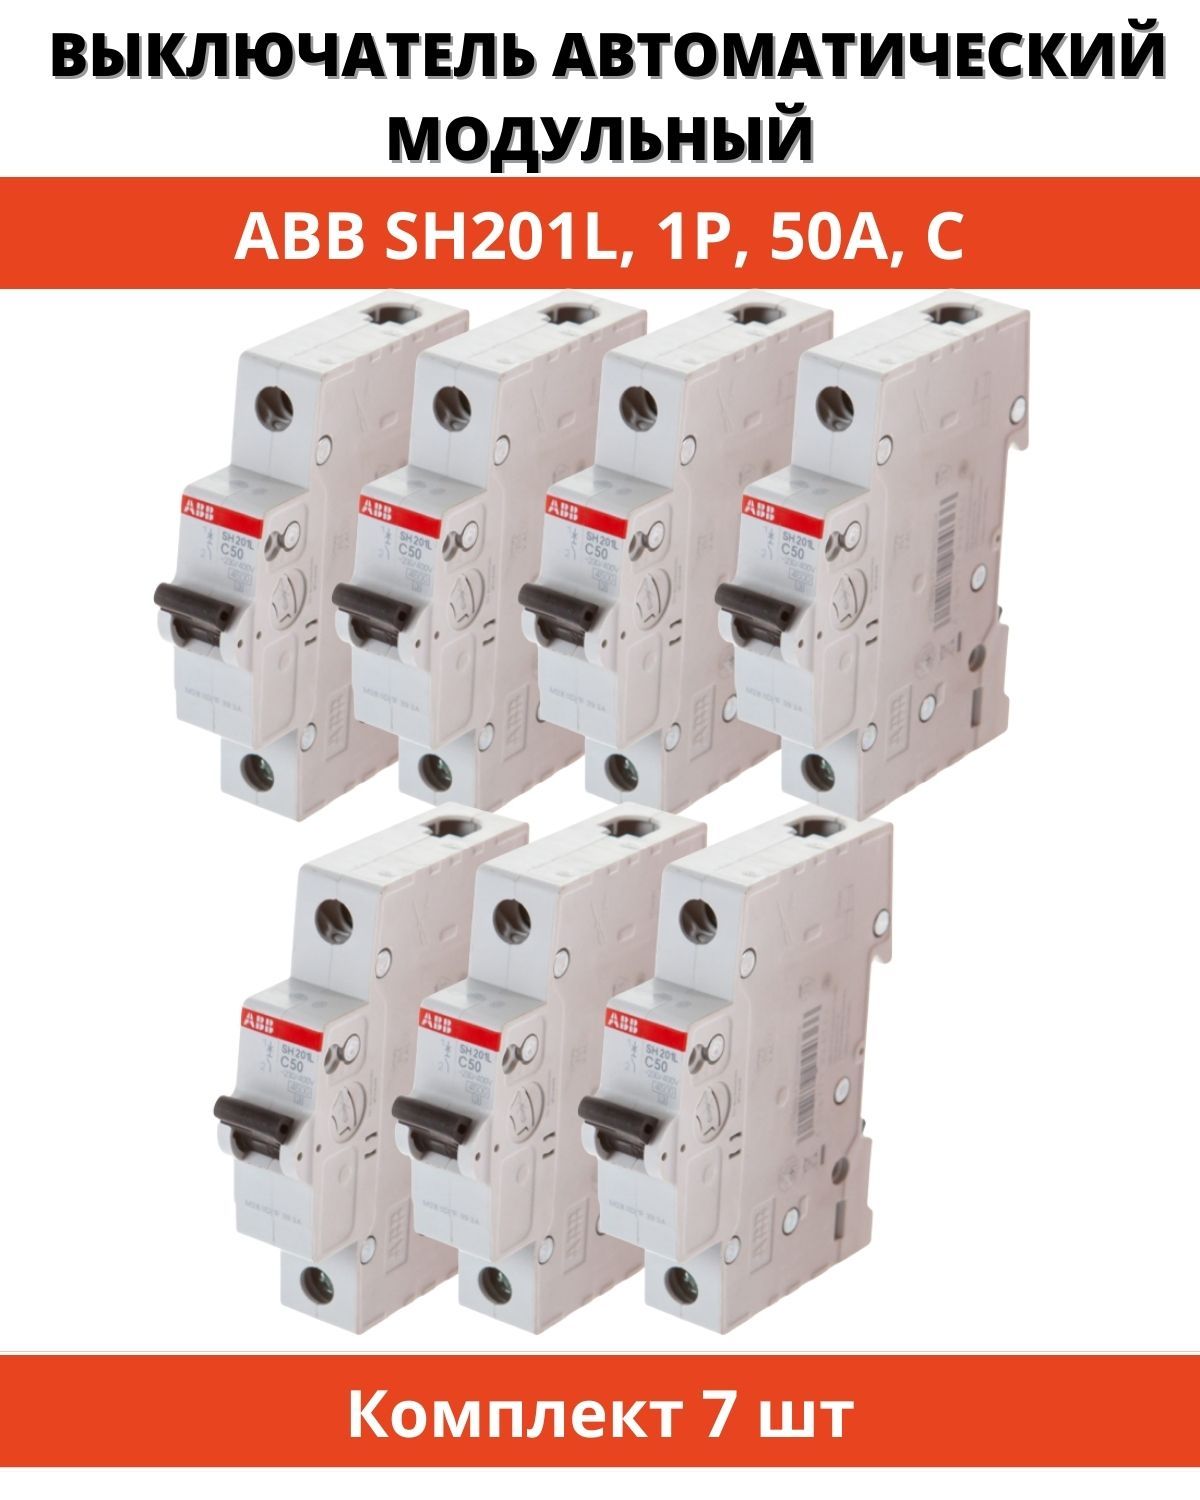 Однополюсные автоматические выключатели abb. Автоматический выключатель ABB sh201l. АВВ sh201l c10. Автоматический выключатель ABB sh201l c10. Автомат ABB ms116.